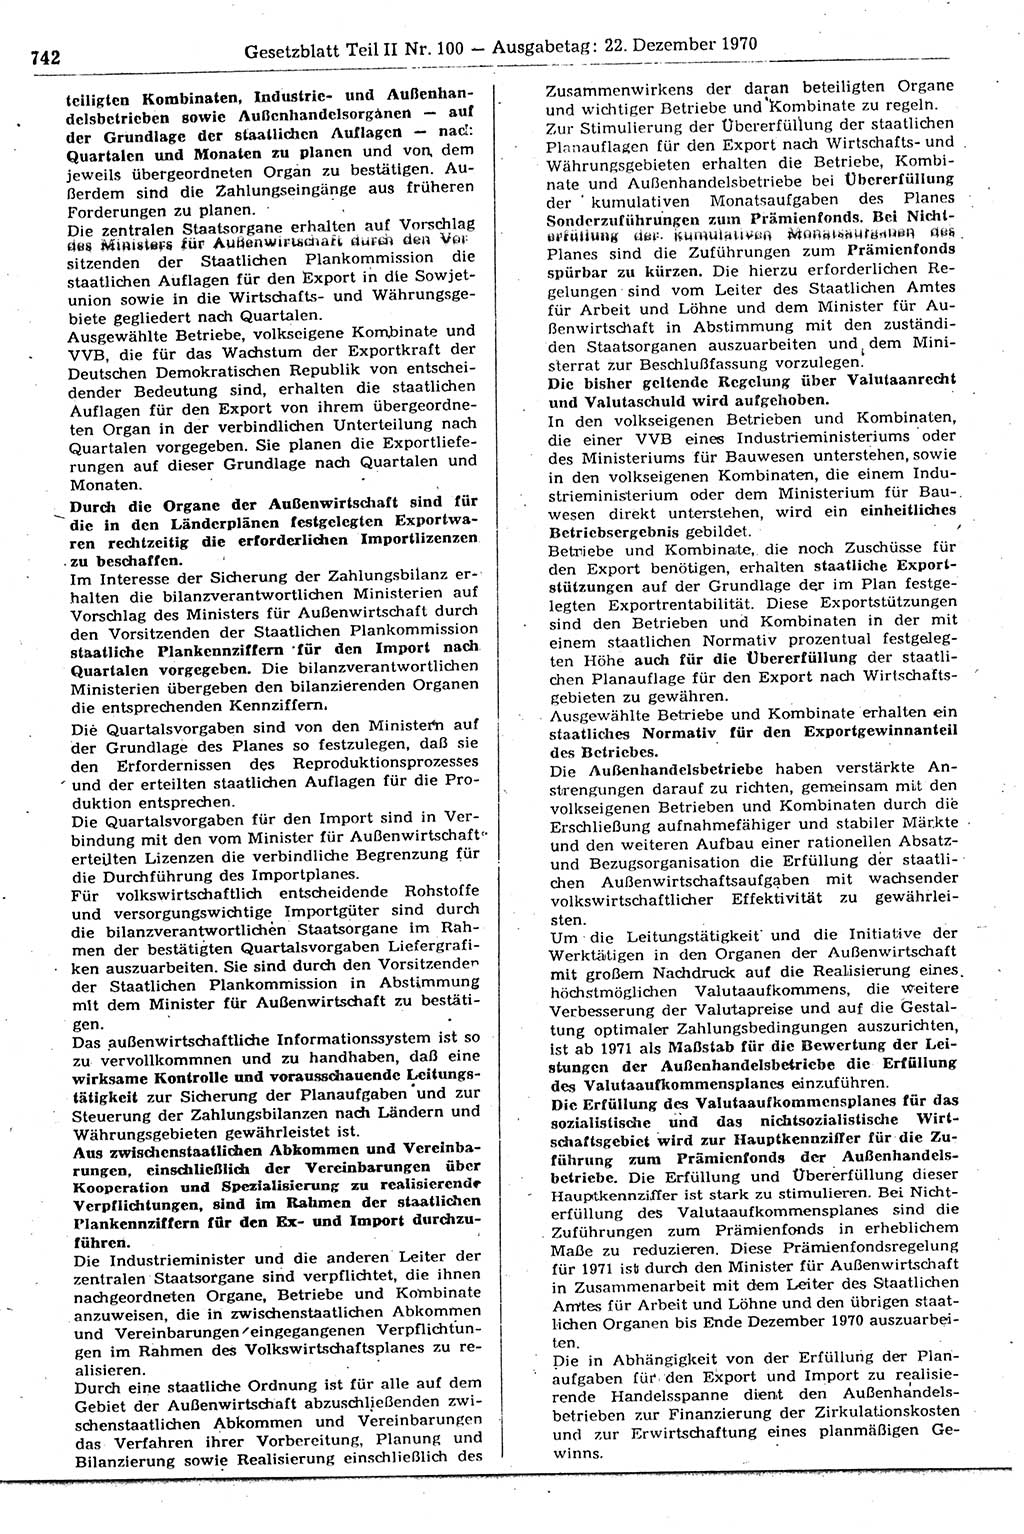 Gesetzblatt (GBl.) der Deutschen Demokratischen Republik (DDR) Teil ⅠⅠ 1970, Seite 742 (GBl. DDR ⅠⅠ 1970, S. 742)